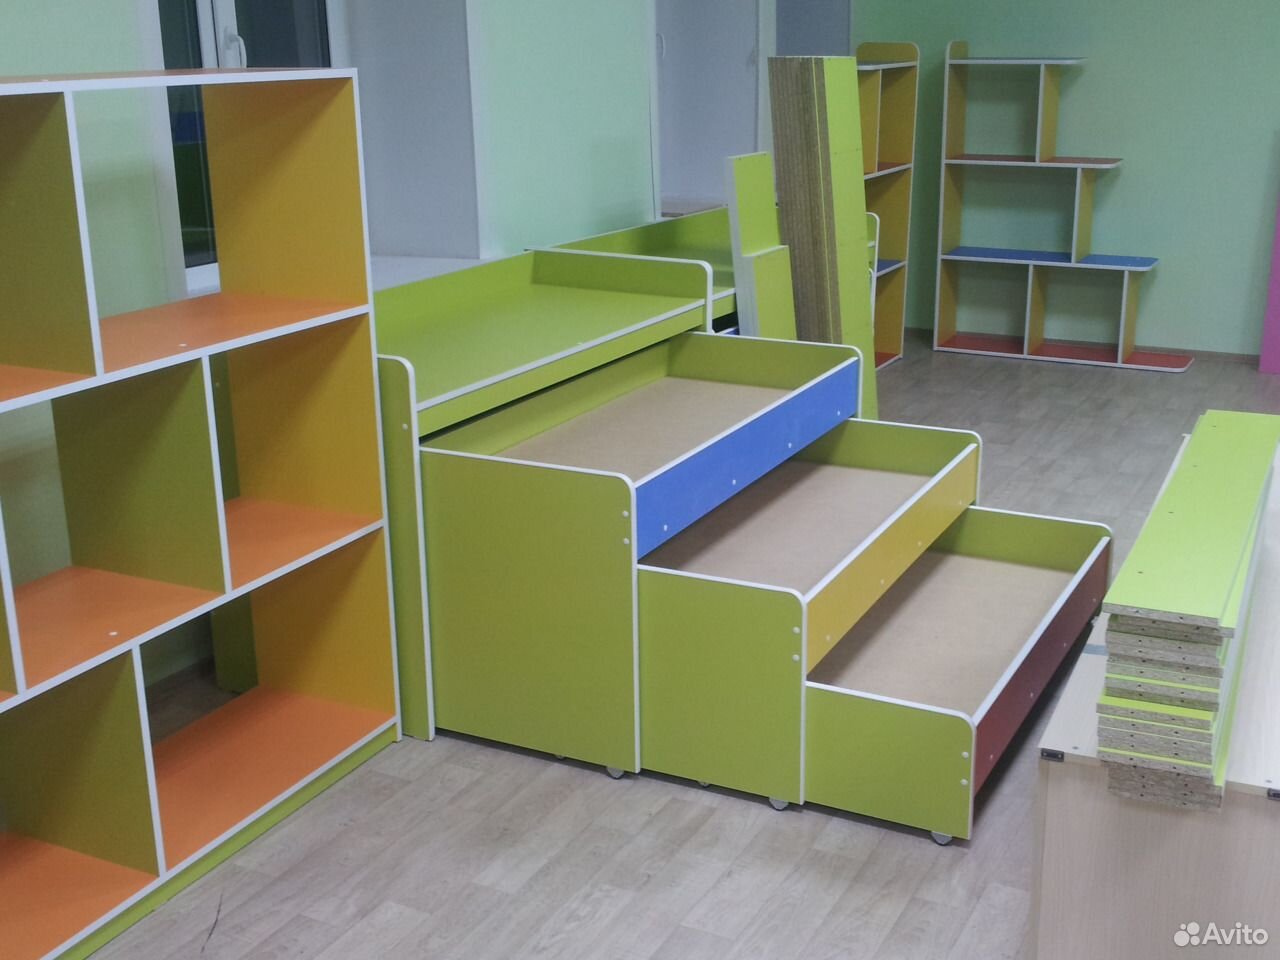 Мебель лдсп на заказ. Мебель с цветной кромкой. Мебель из ЛДСП. Корпусная мебель для детского сада. Мебель из ЛДСП В детский сад.